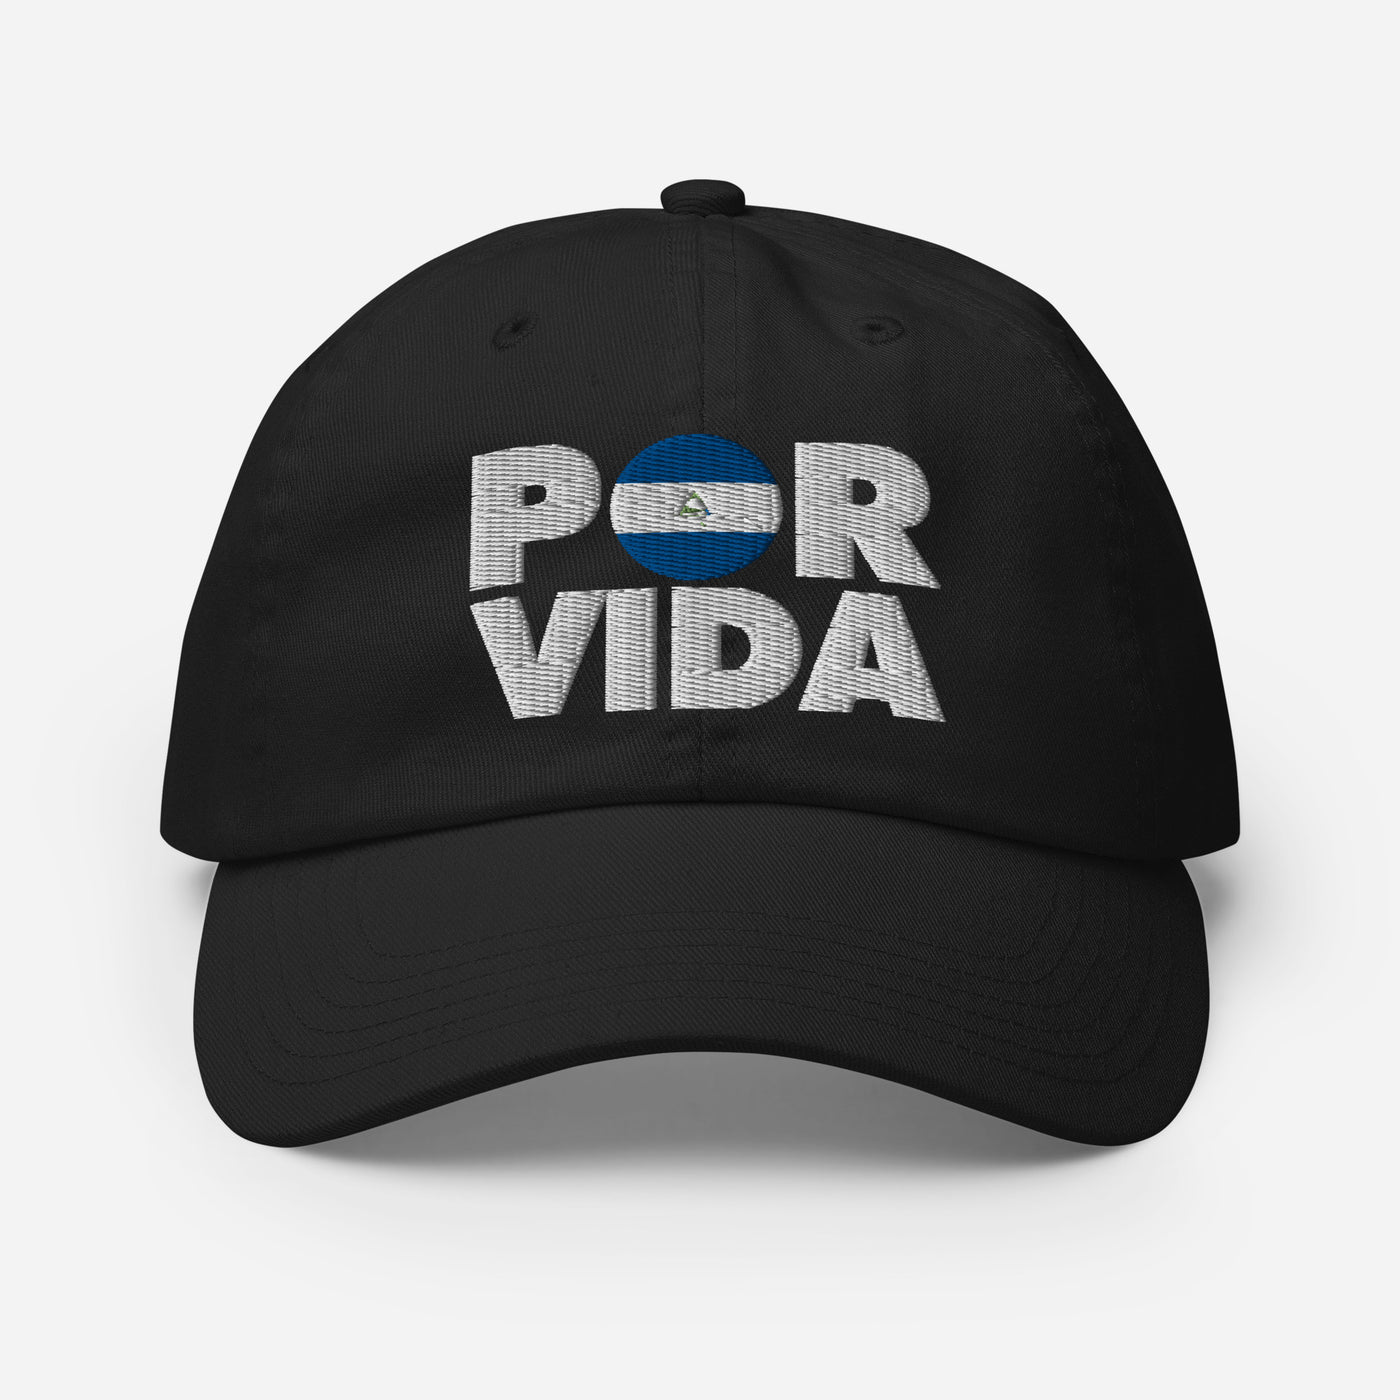 Nicaragua POR VIDA Champion Dad Cap